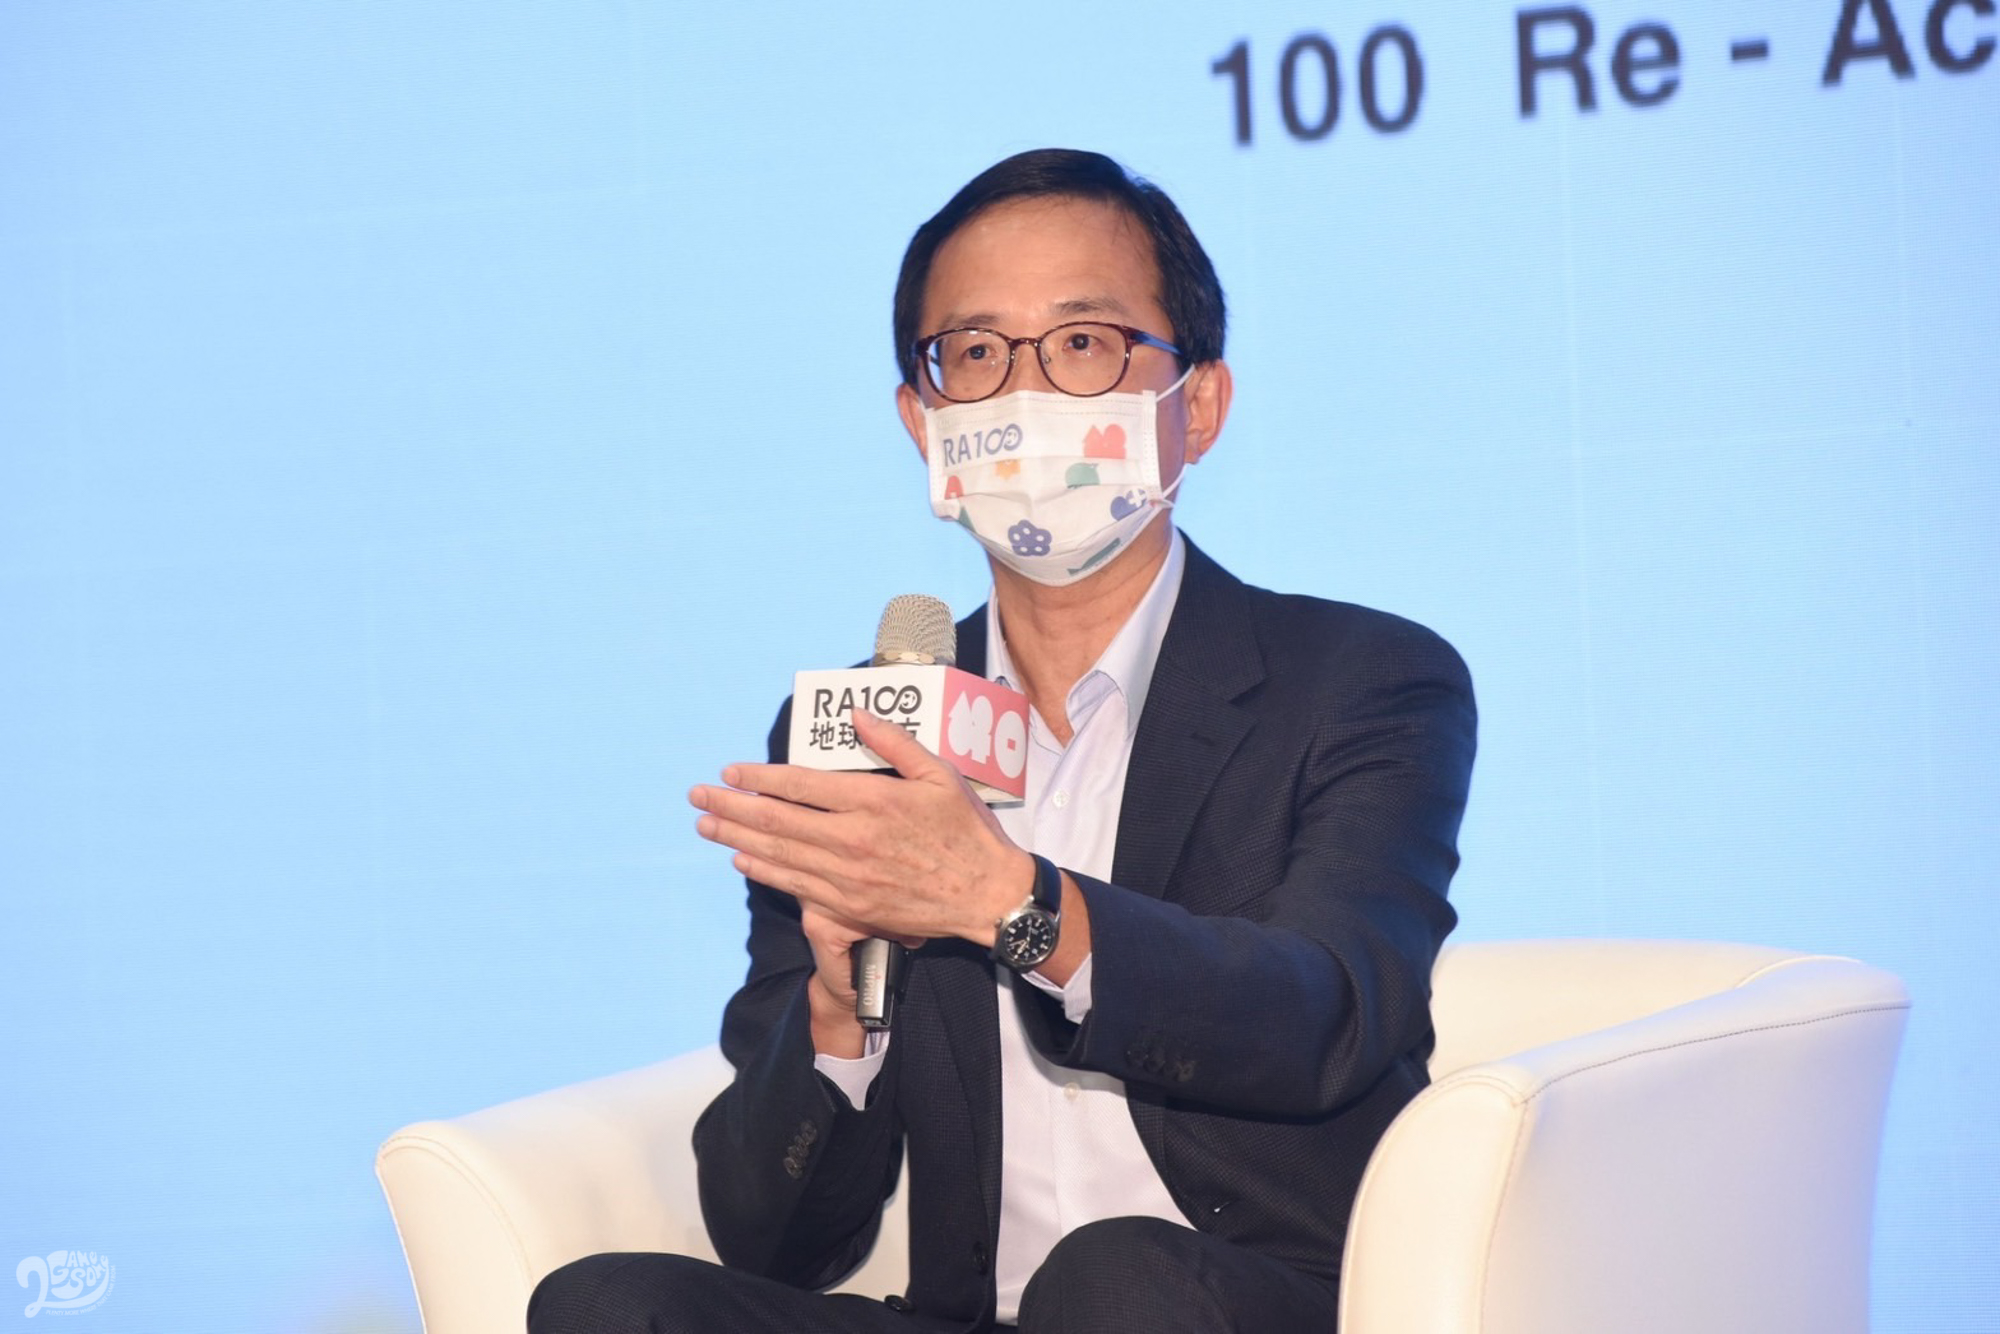 格上租車總經理陳俊在4/23(六)世界地球日「RA100地球解方：2022永續設計行動高峰會」活動上即首度公開格上推動CaaS的成績。) 「聯合線上倡議家」提供。